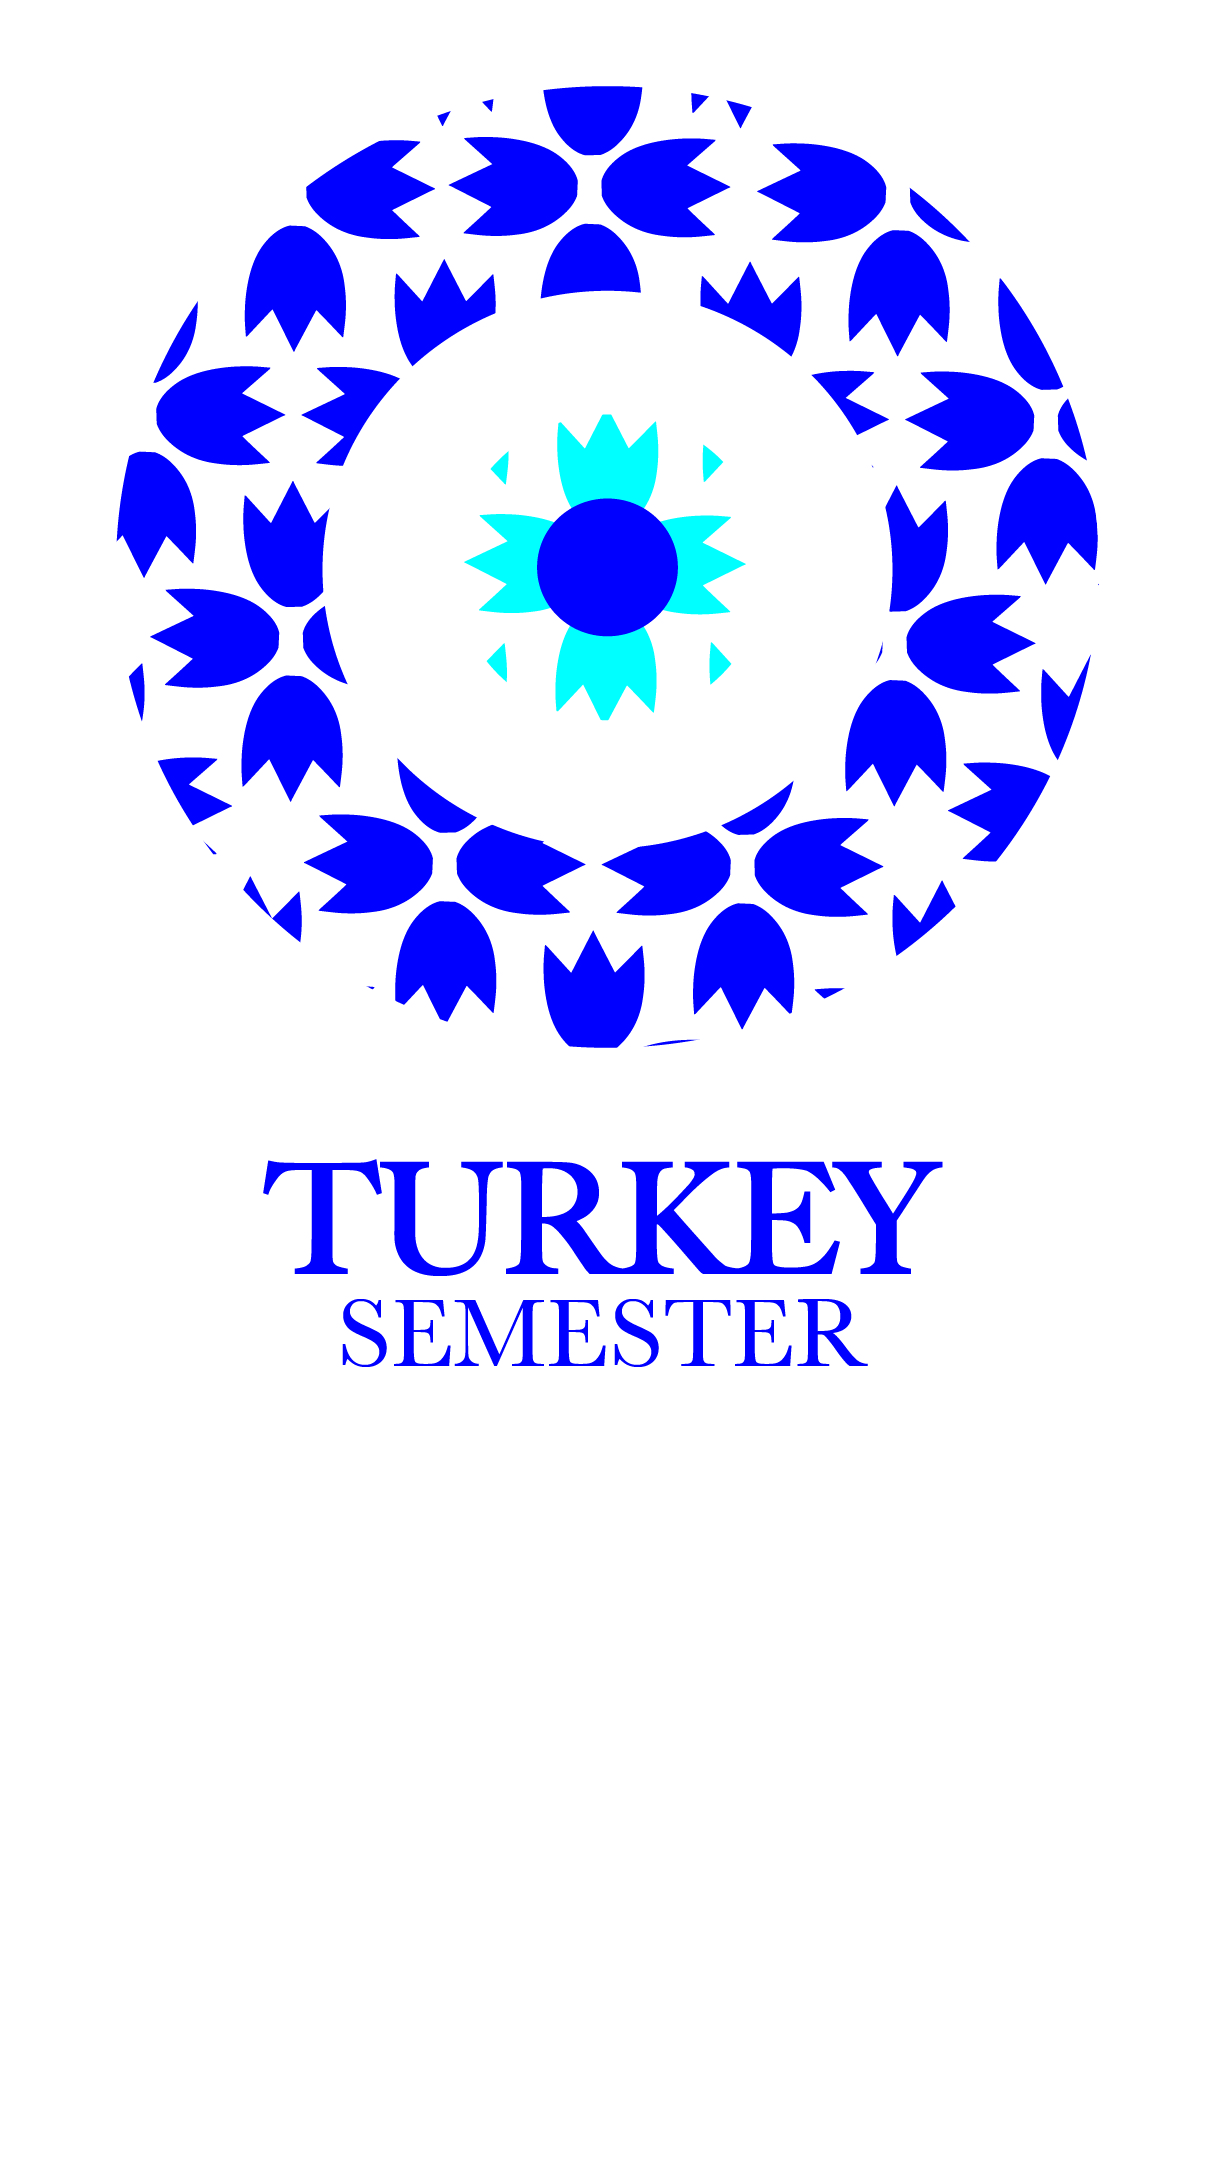 Turkey Semester Logo